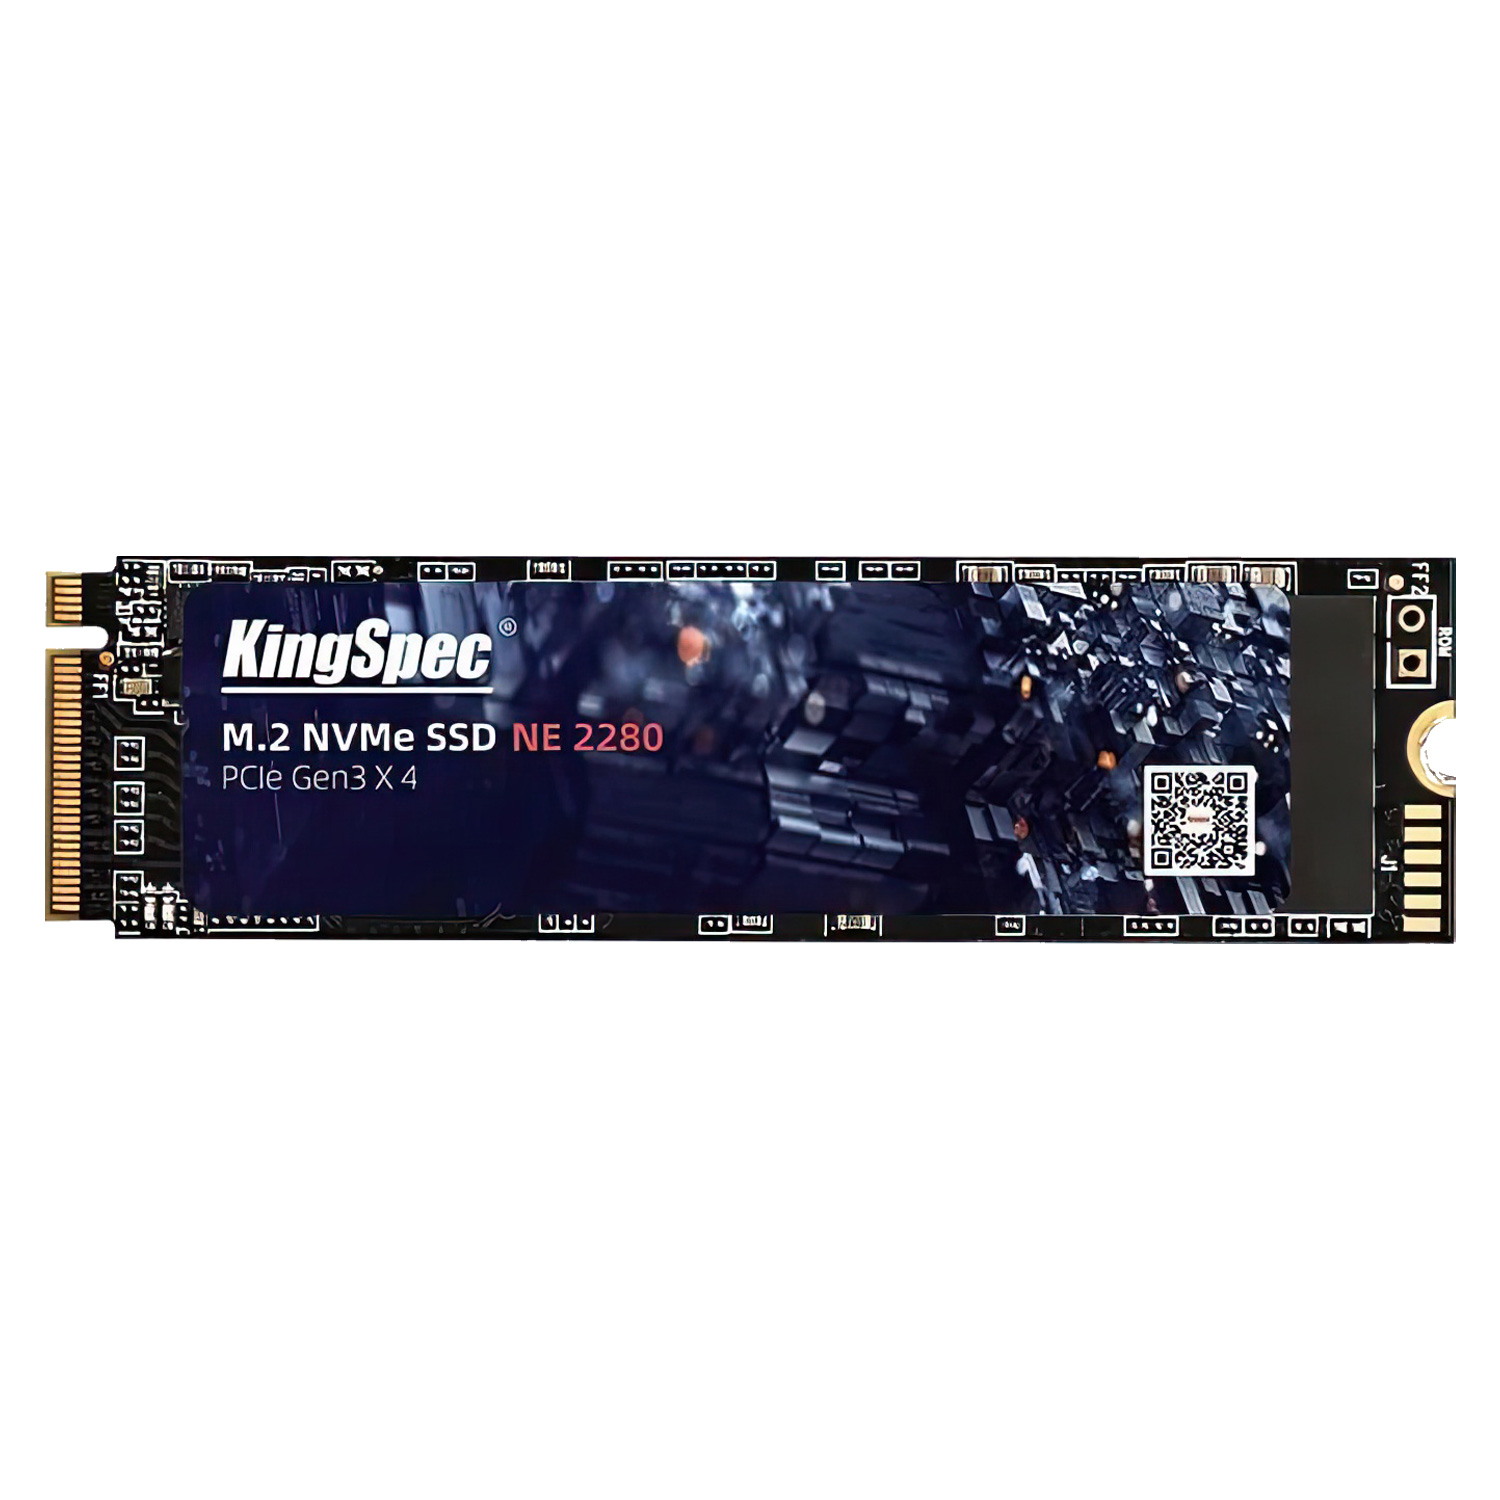 SSD M.2 KingSpec 512GB / Gen 3 / NVME - (NE-512)
